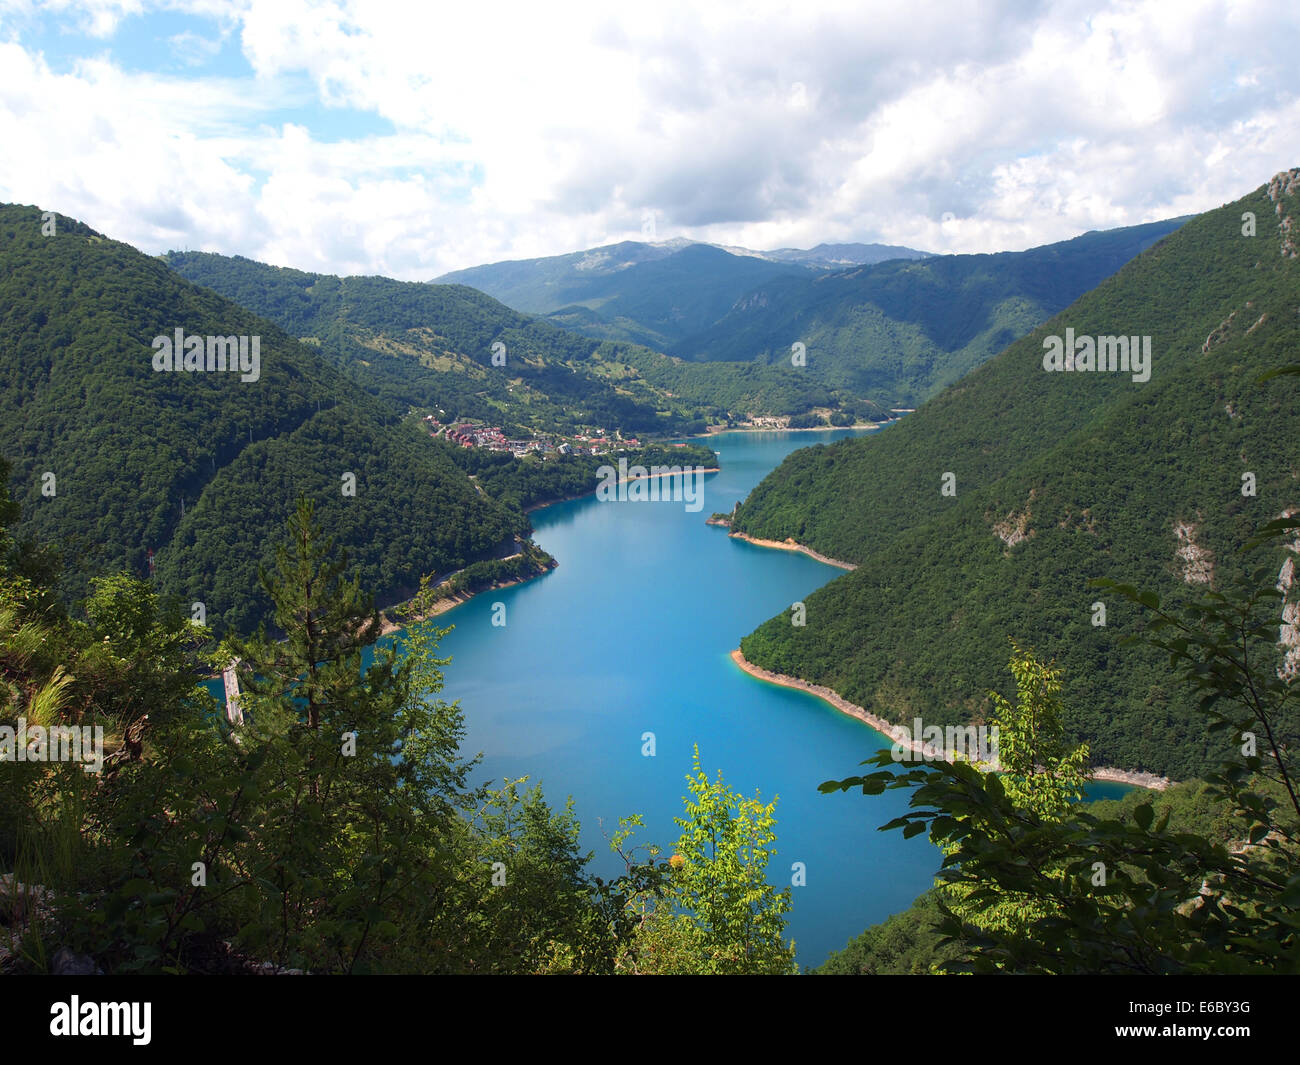 Hermosa vista del lago de alta montaña azul Foto de stock